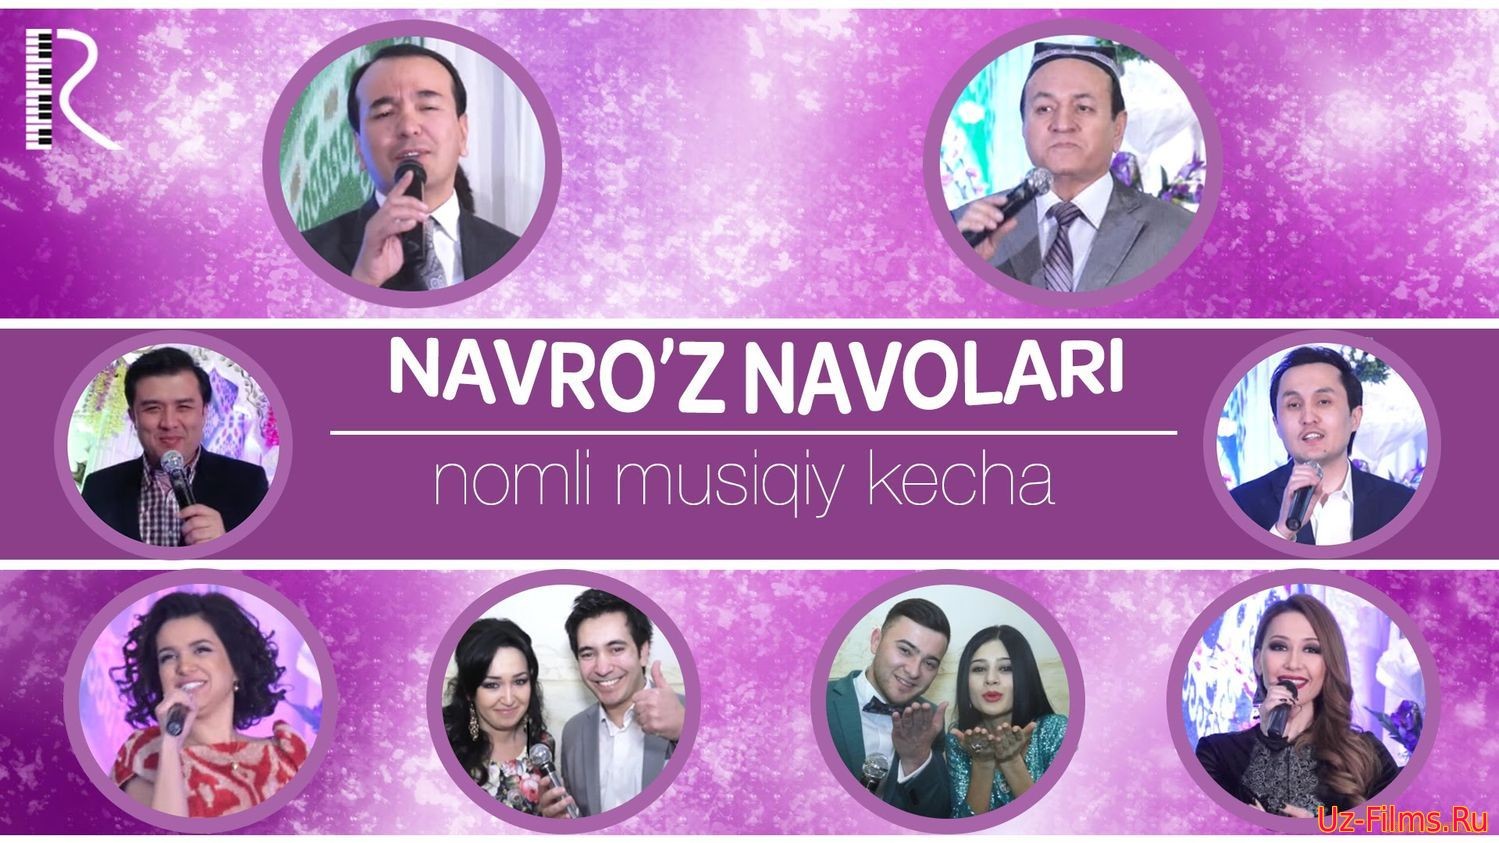 Navro'z navolari nomli musiqiy kecha konsert dasturi 2014